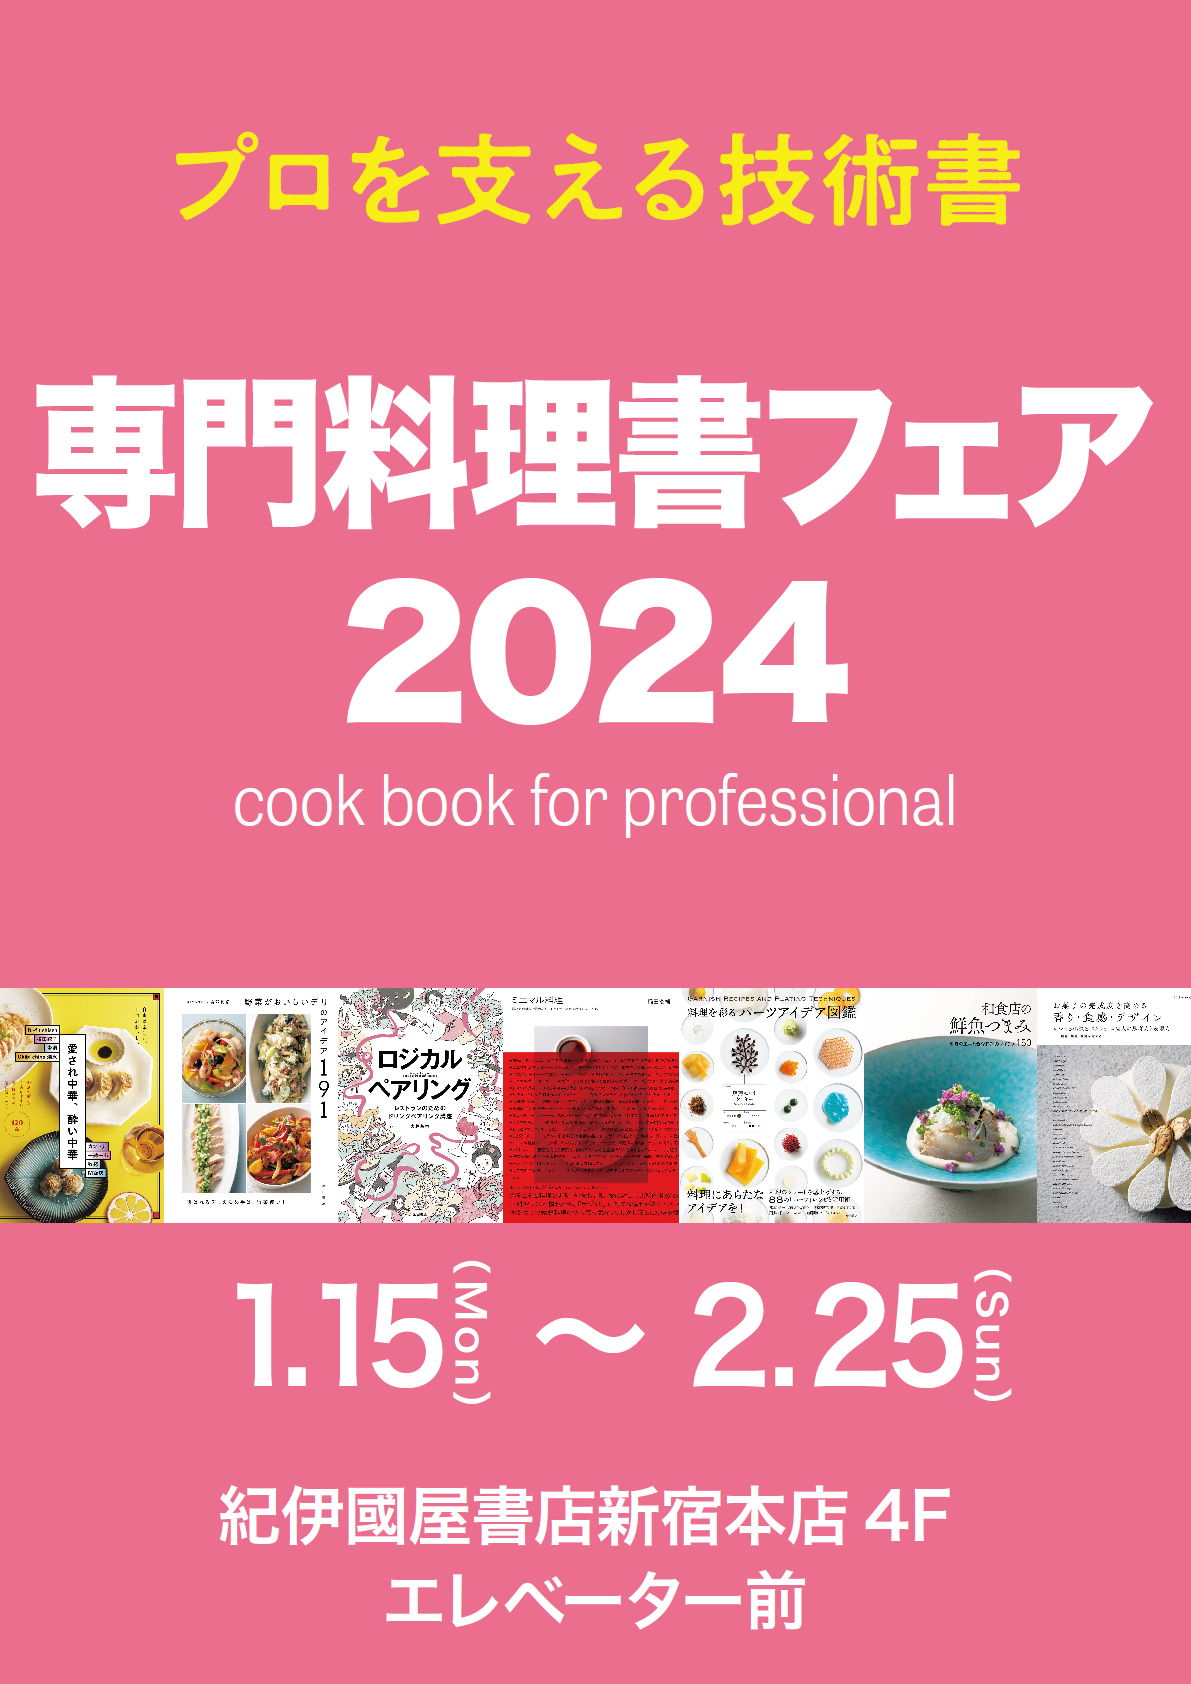 【フェア】専門料理書フェア 2024のご案内